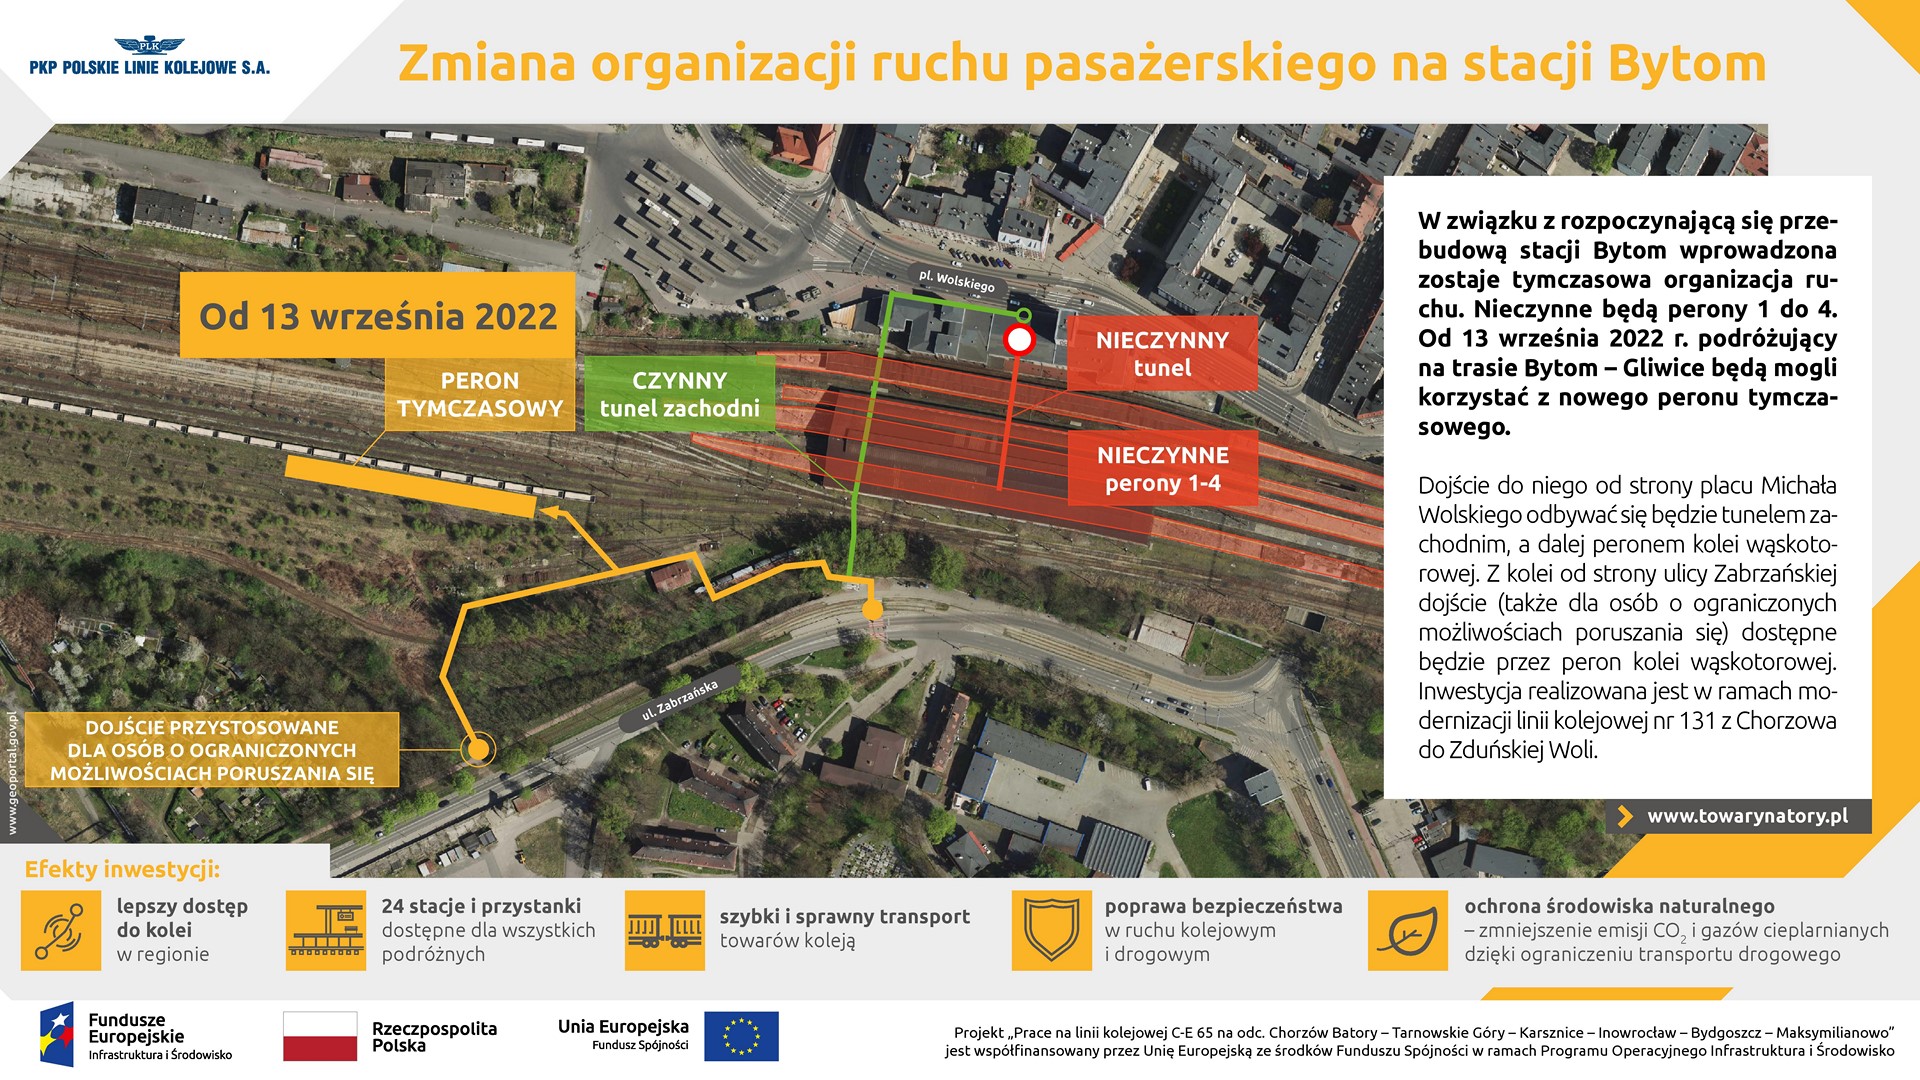 Infografika przedstawia zdjęcie satelitarne dworca kolejowego w Bytomiu z zaznaczonym peronem tymczasowym.